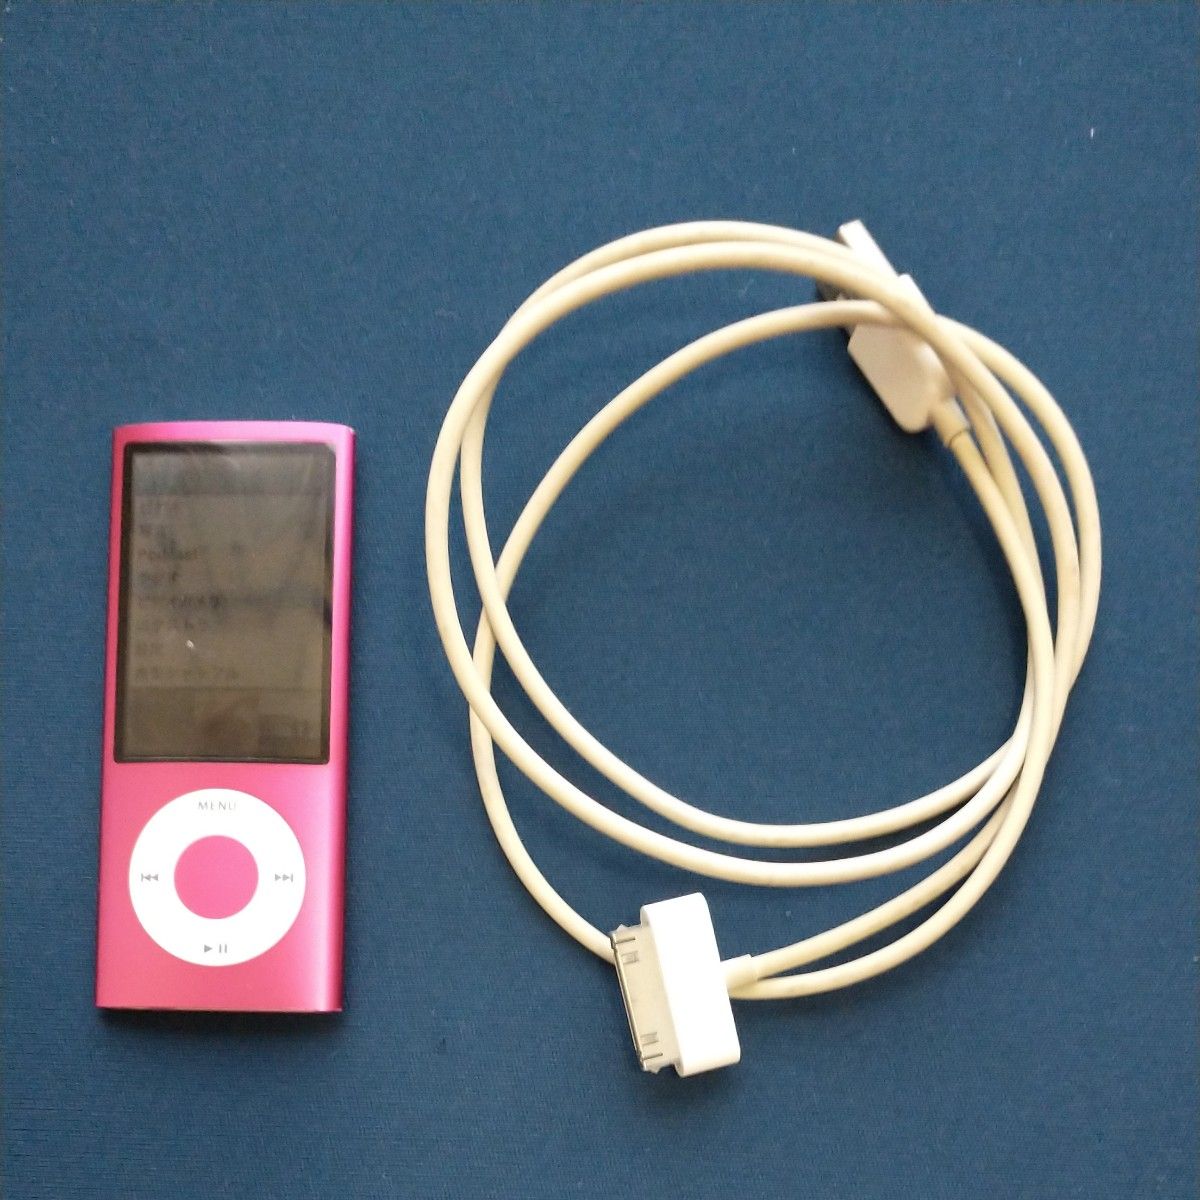 iPod nano ピンク ケーブル付属